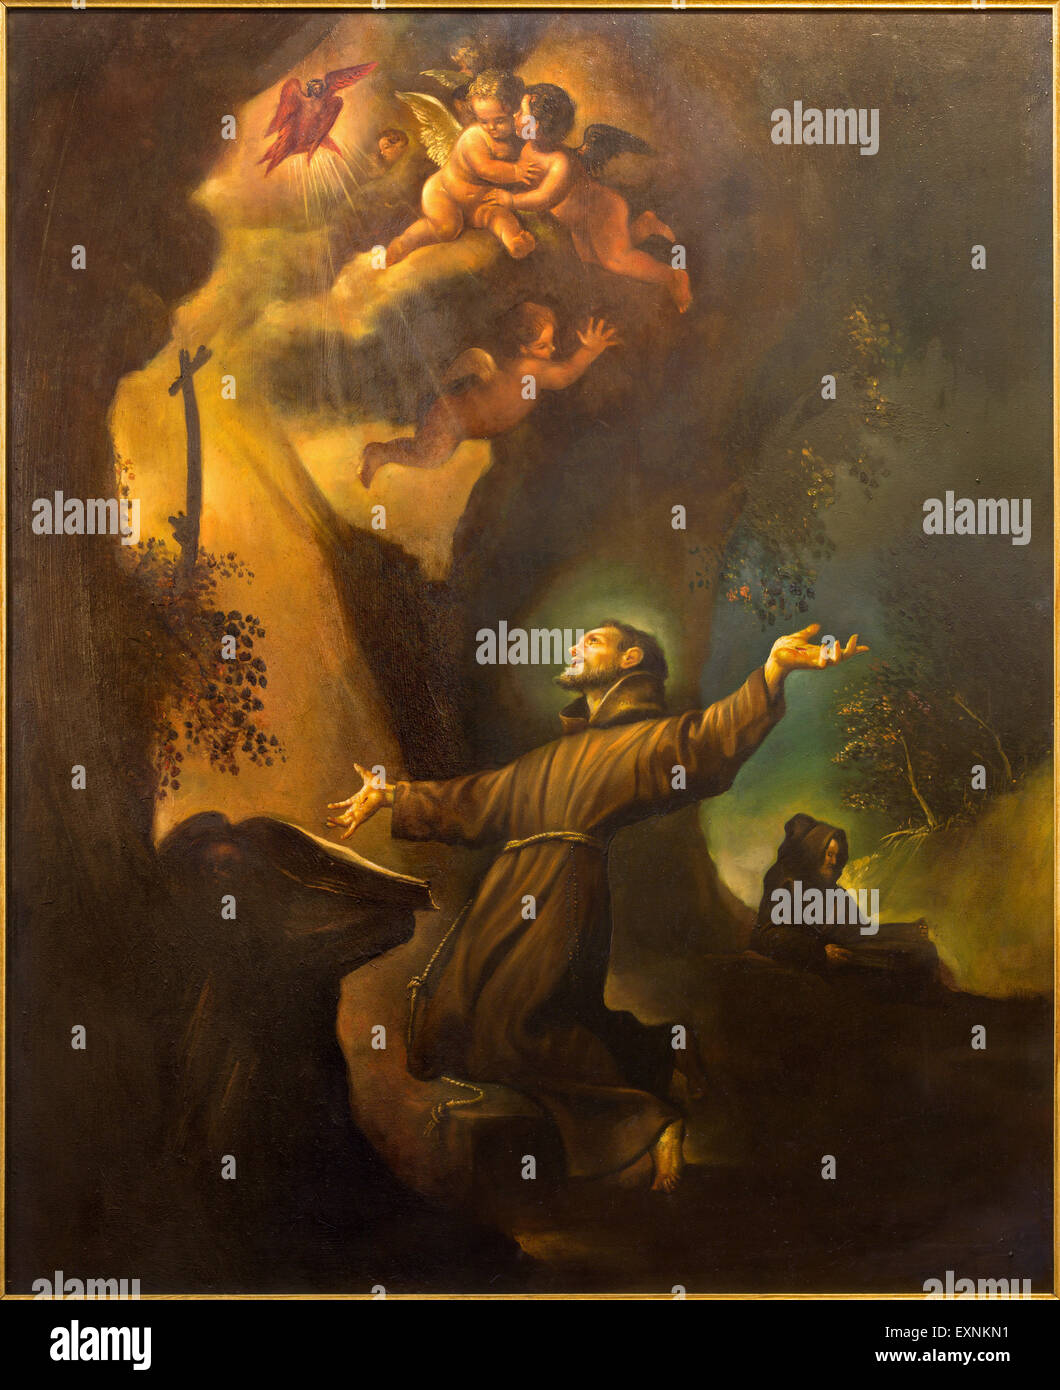 CORDOBA, España - 27 de mayo de 2015: la pintura moderna de la estigmatización de San Francisco de Asís de 20. ciento. En la iglesia del convento Foto de stock